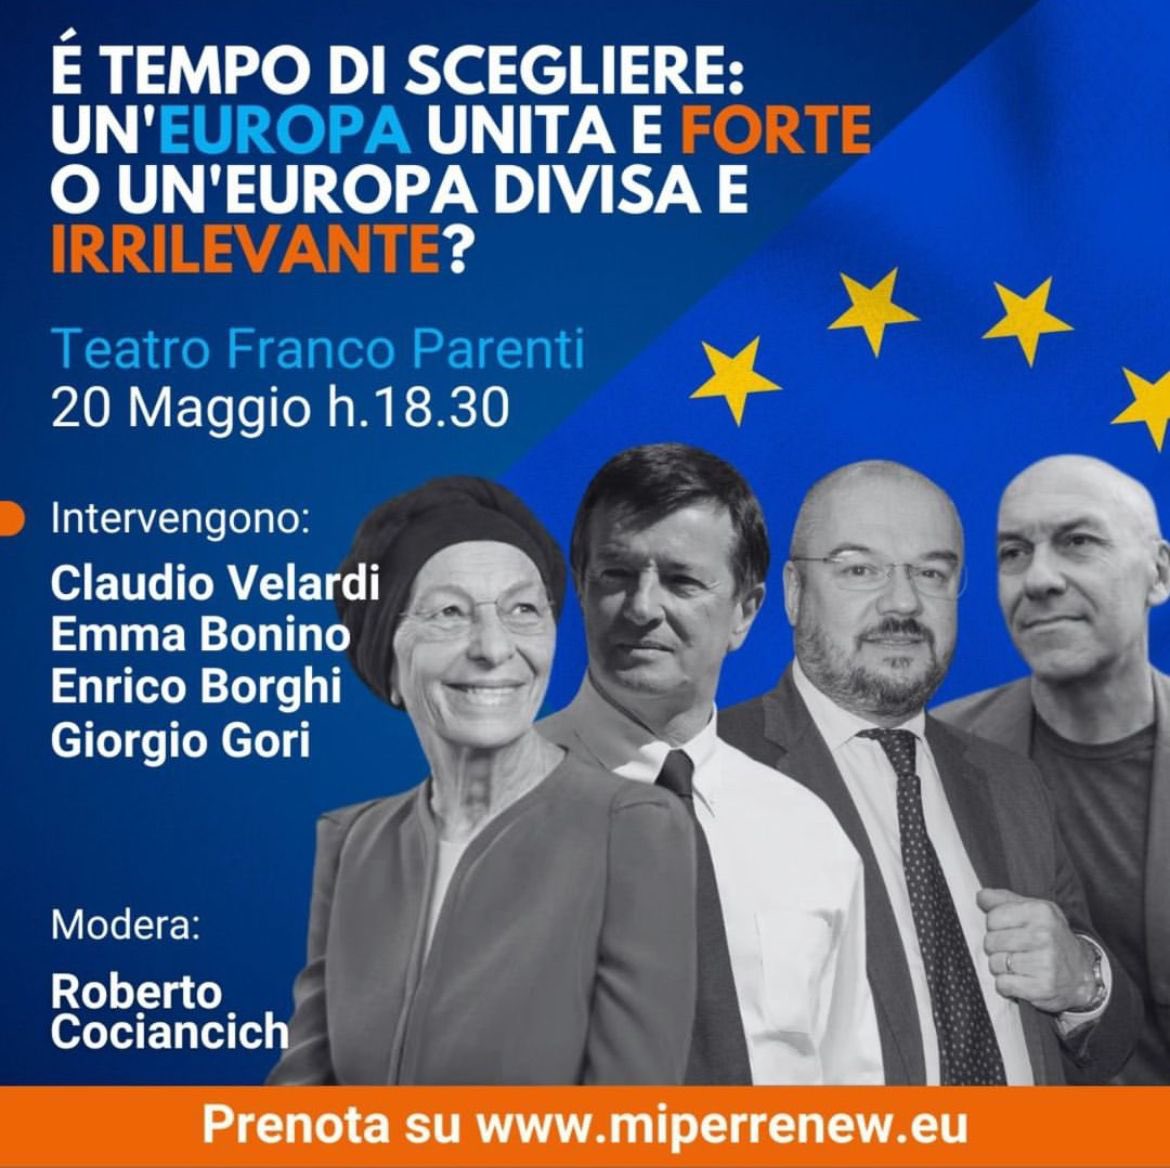 Oggi sarò a Milano al Teatro Parenti per confrontarmi con @emmabonino @giorgio_gori e @claudiovelardi sui temi dell’Europa. Un’occasione per porre il tema degli Stati Uniti d’Europa, e dell’esigenza di un europeismo riformista contrapposto al nazionalismo sovranista della destra